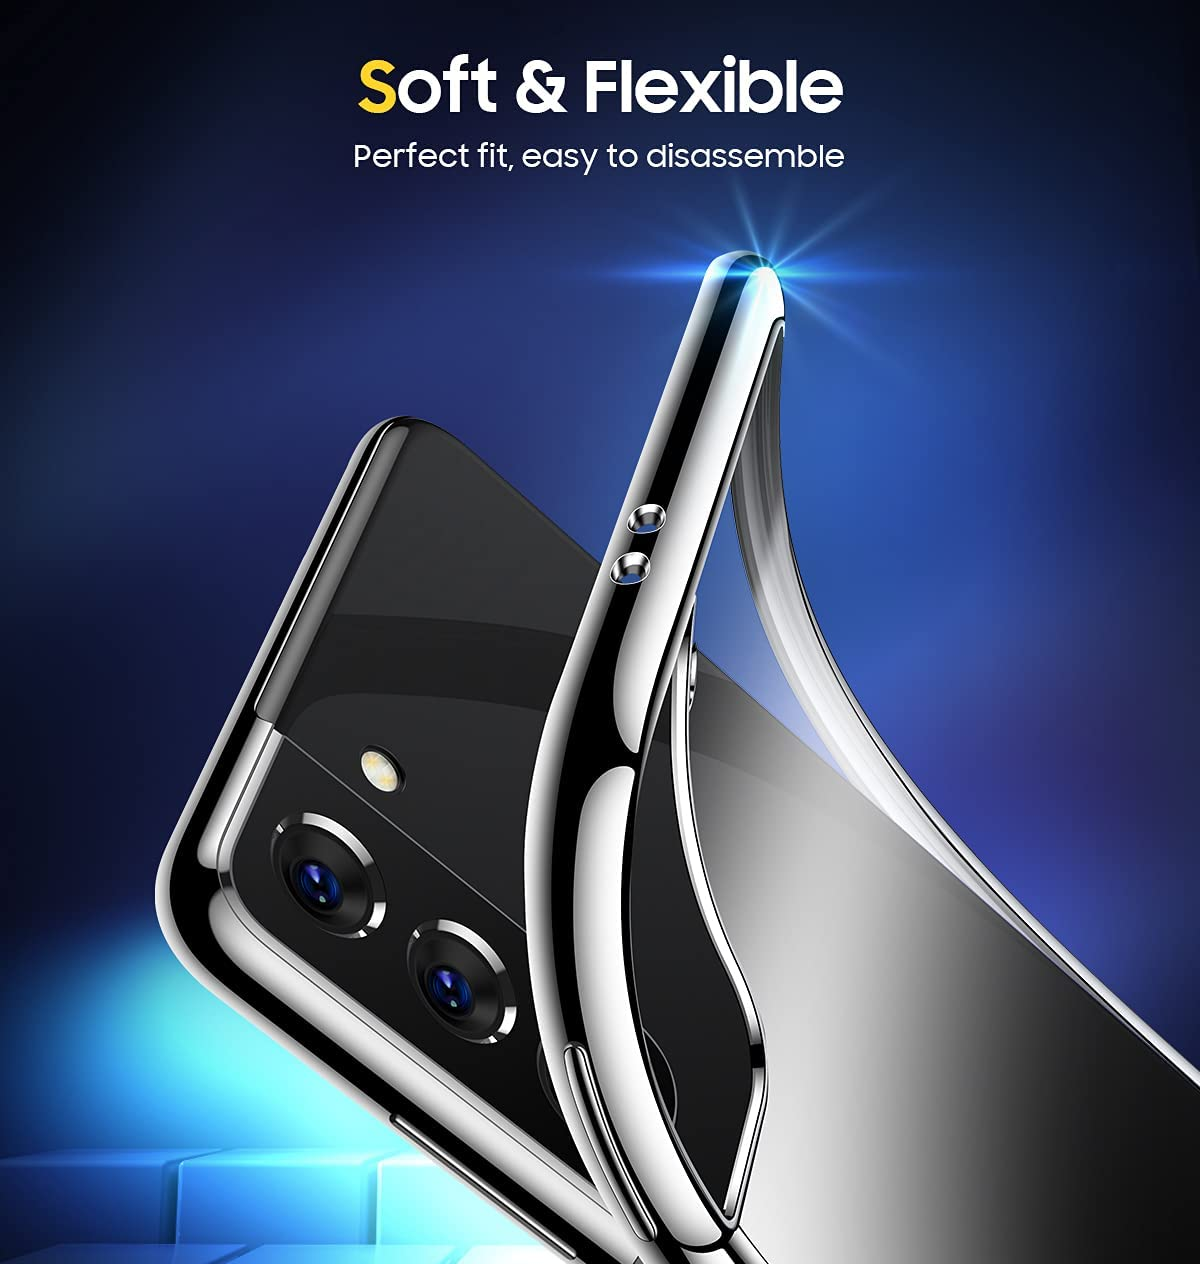 Ốp lưng silicon dẻo cho Samsung Galaxy S21 FE hiệu Ultra Thin mỏng 0.6mm độ trong tuyệt đối chống trầy xước - Hàng nhập khẩu